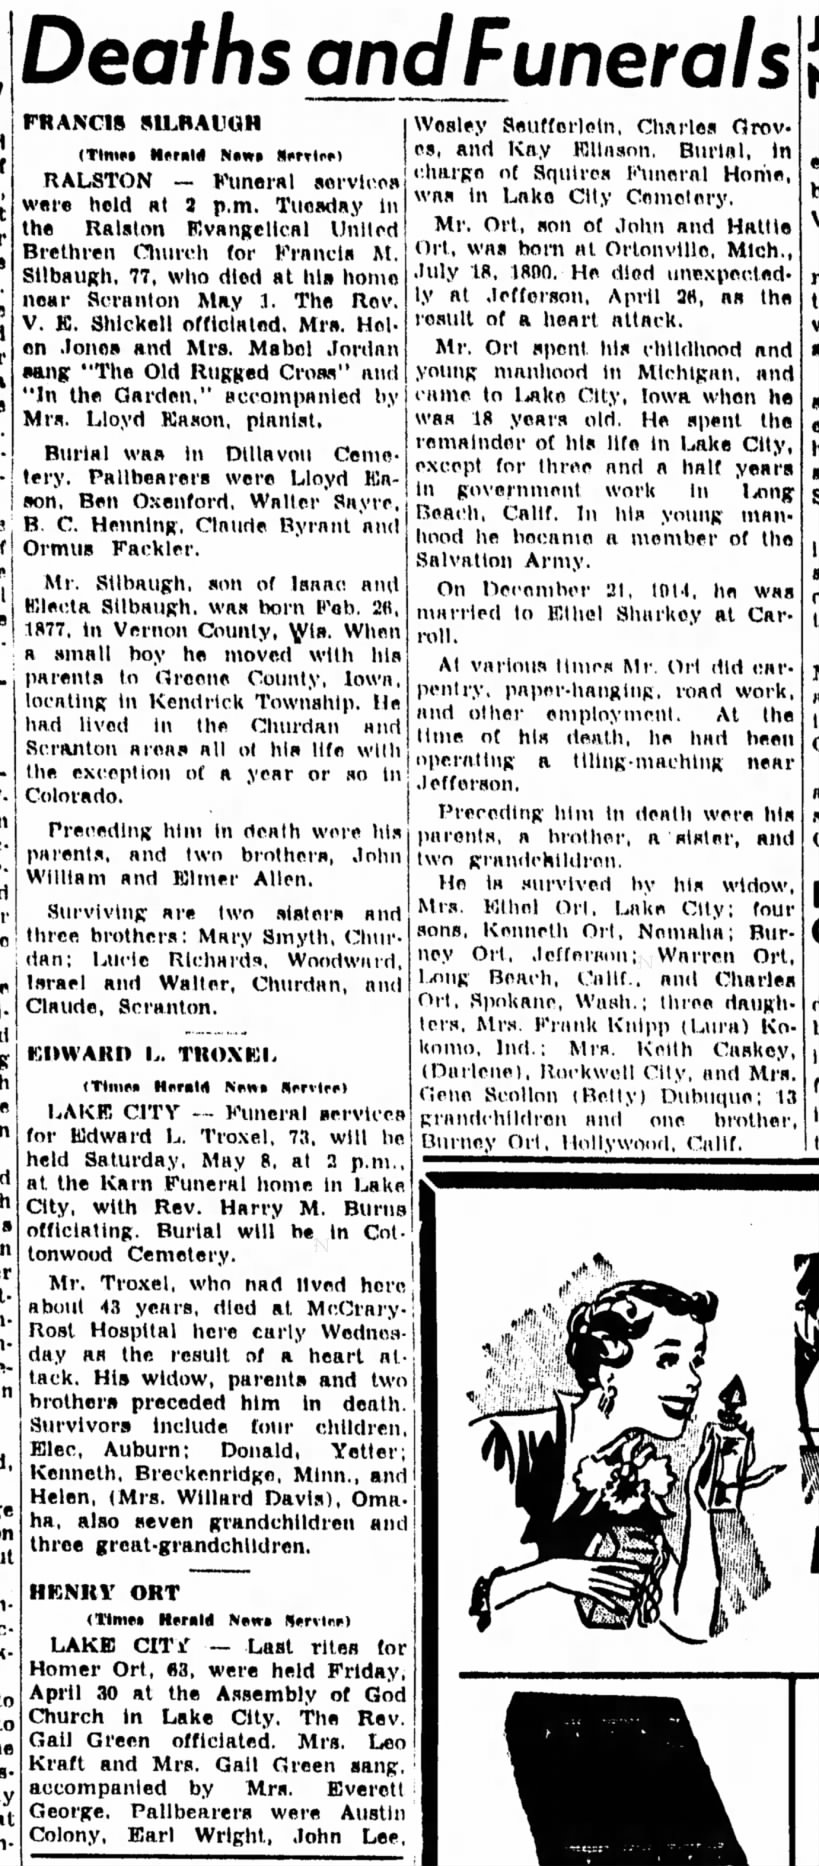 Carrol Daily Times Herald
Carroll, Iowa
Thursday, May 6, 1954
p5